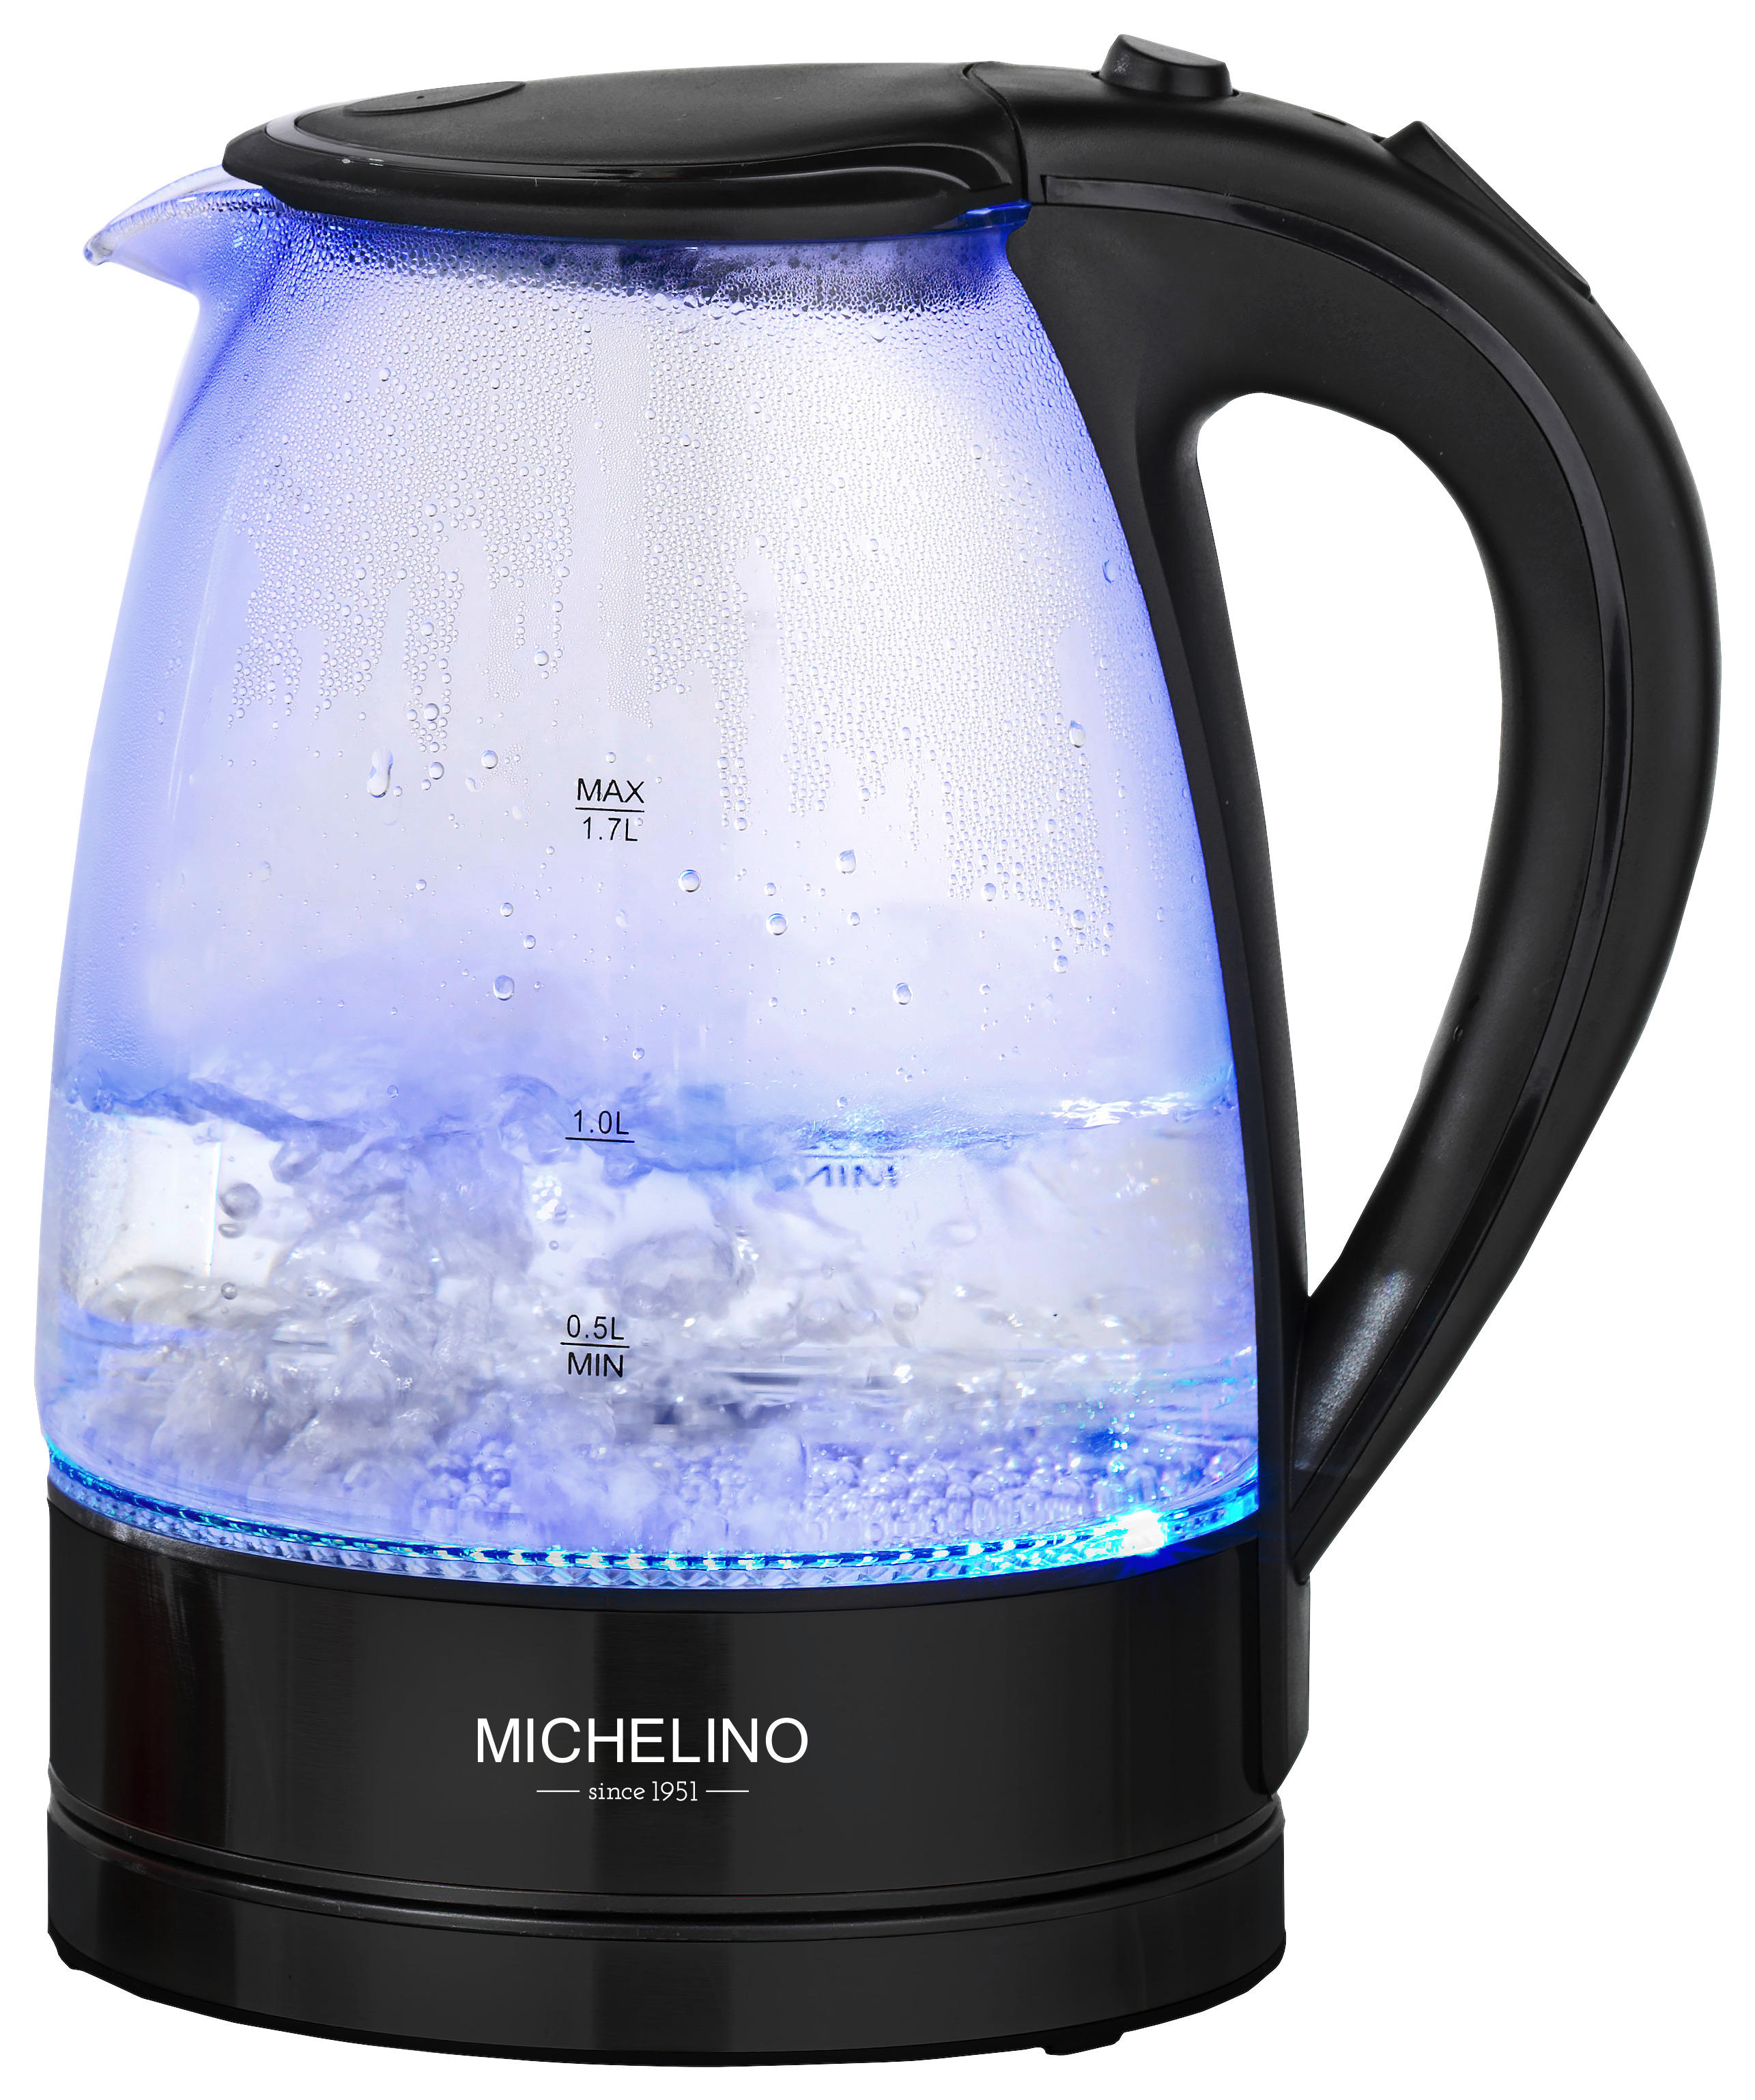 Michelino Wasserkocher 74279 Michelino - schwarz